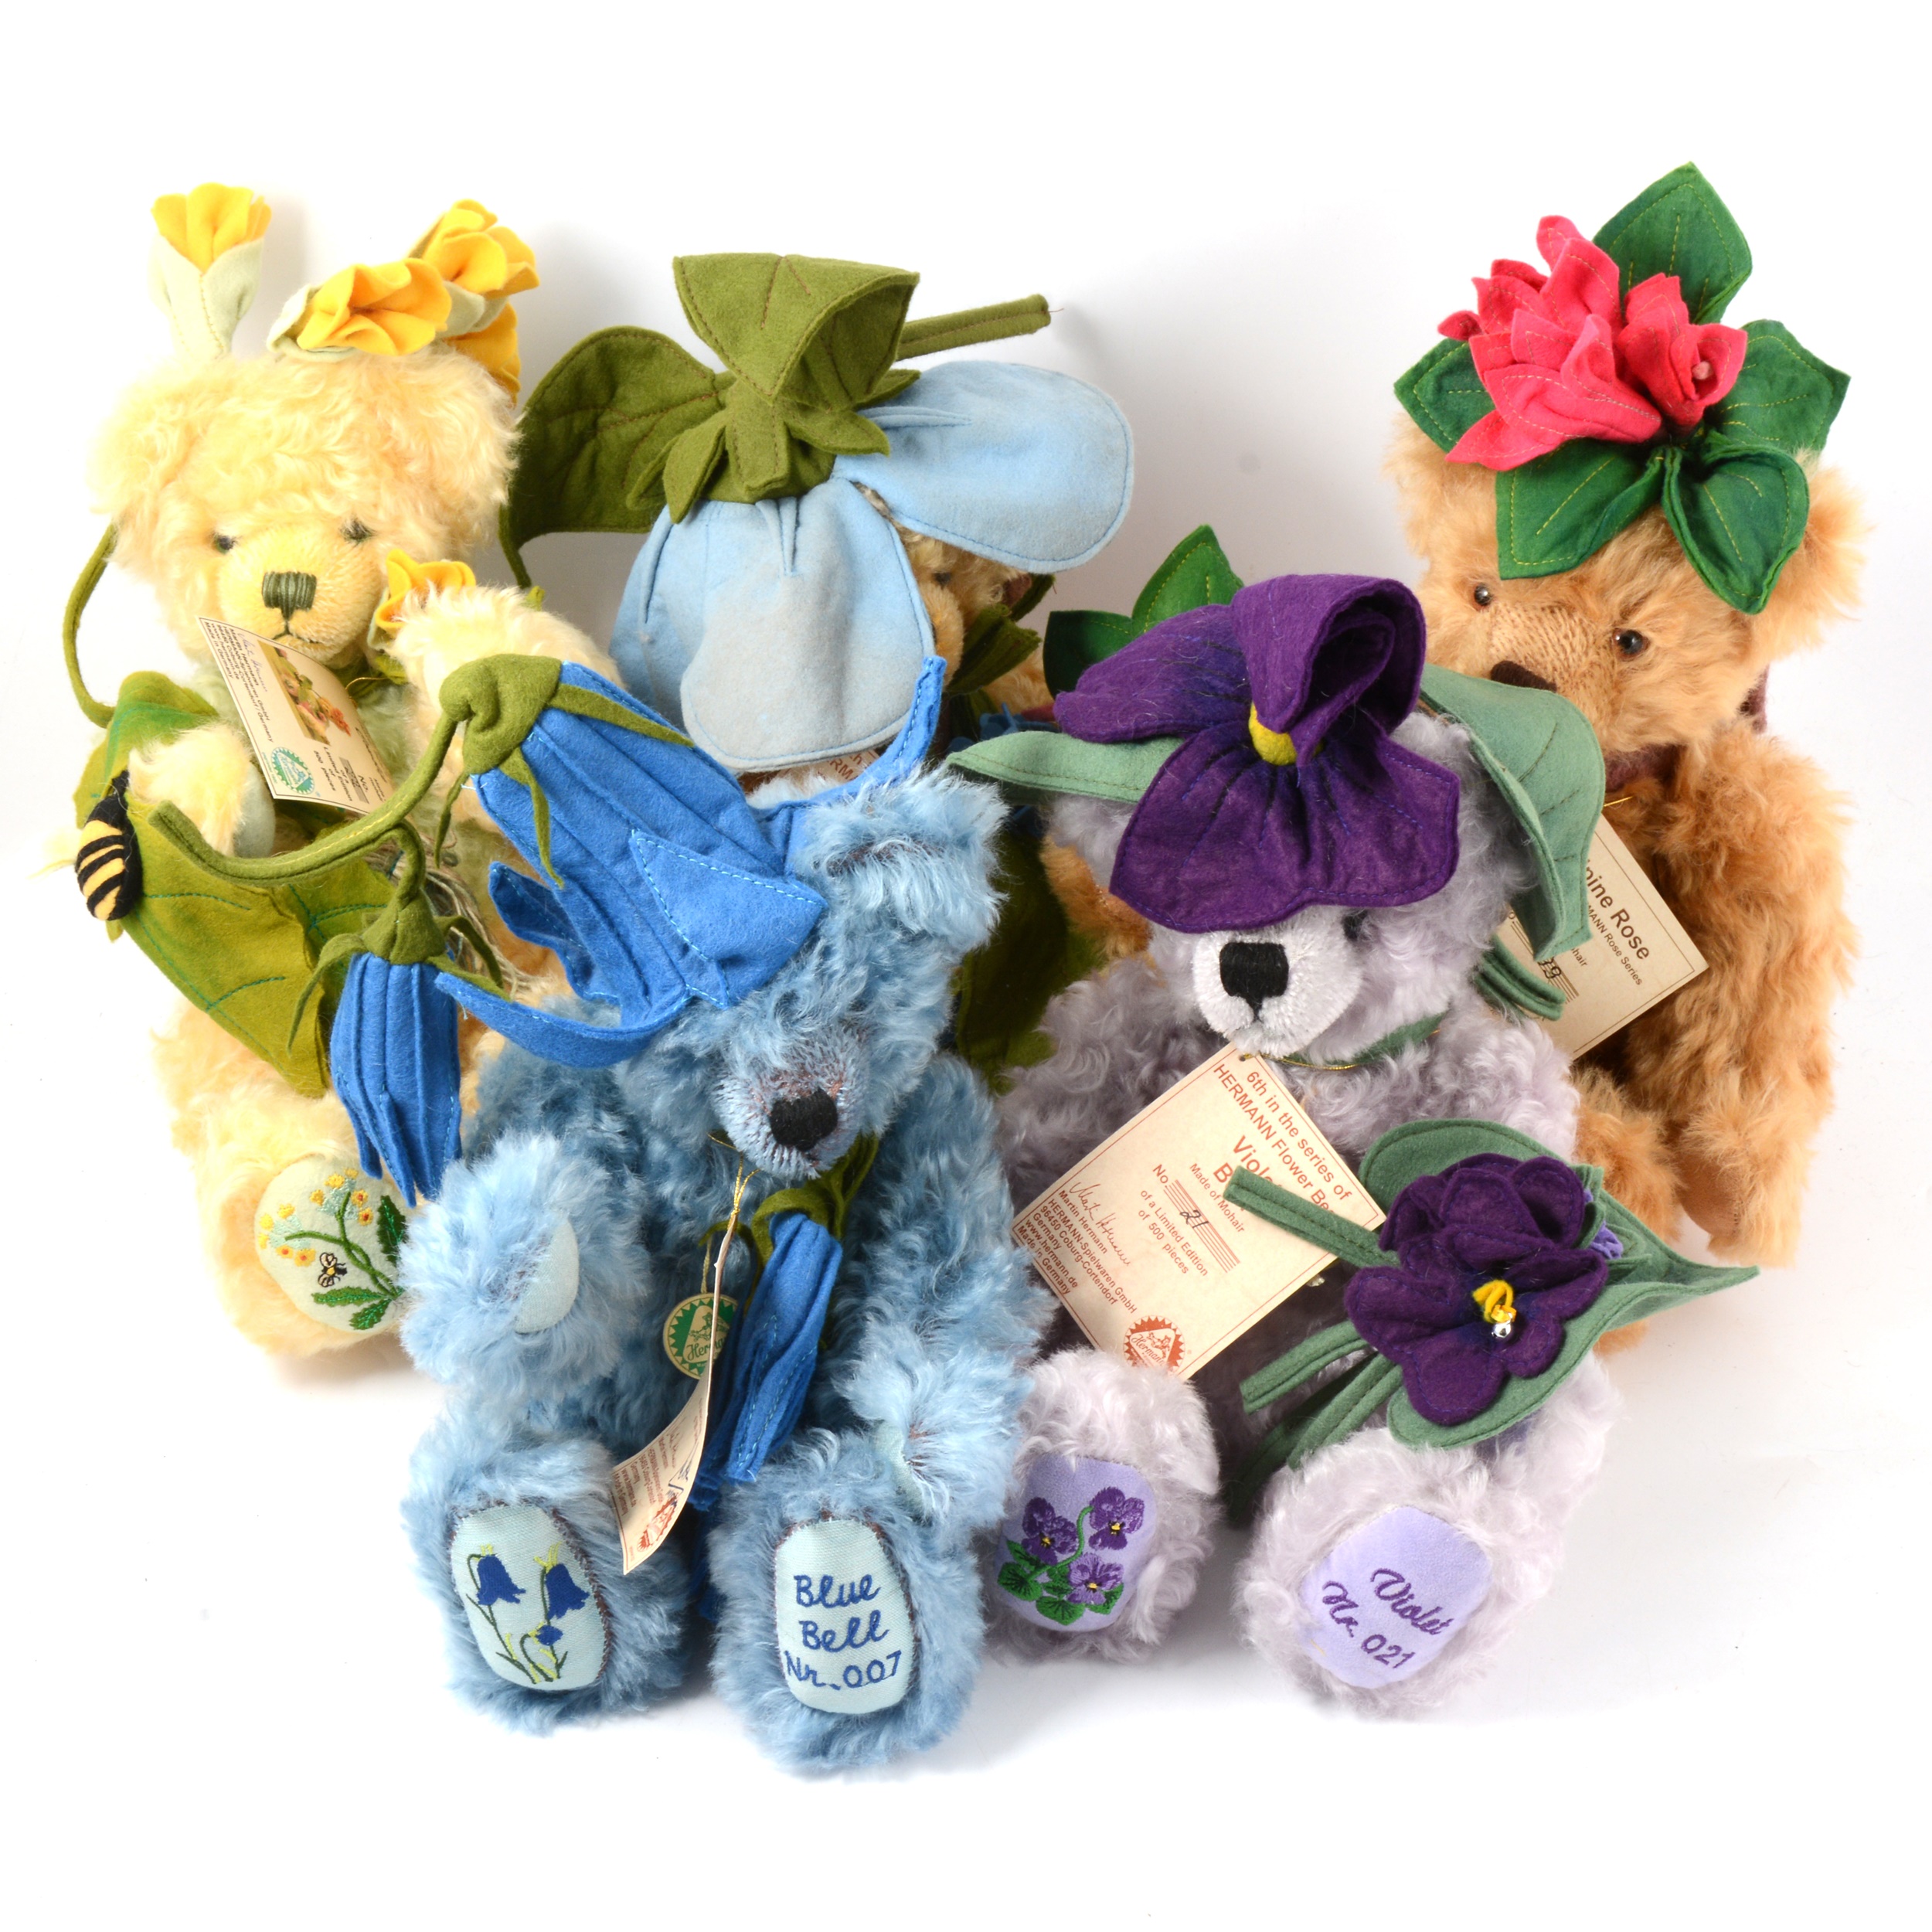 Hermann-Spielwaren Flower series mohair teddy bears, fifteen. - Image 2 of 3